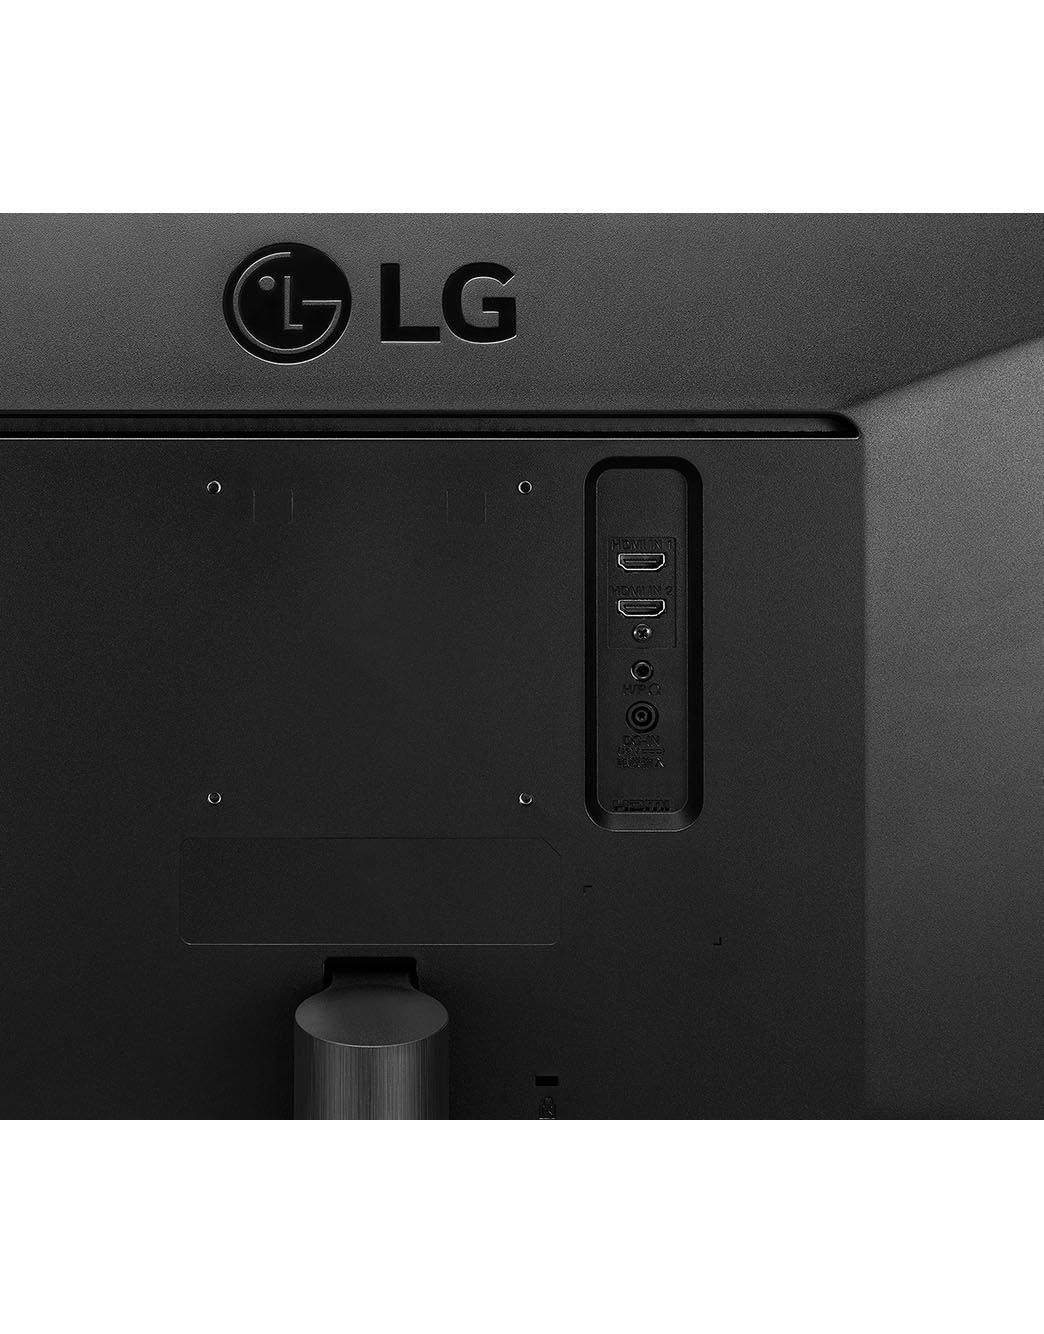  LG 34WL500-B 34 21:9 UltraWide Full HD HDR10 IPS LED Monitor,  Black : Electronics